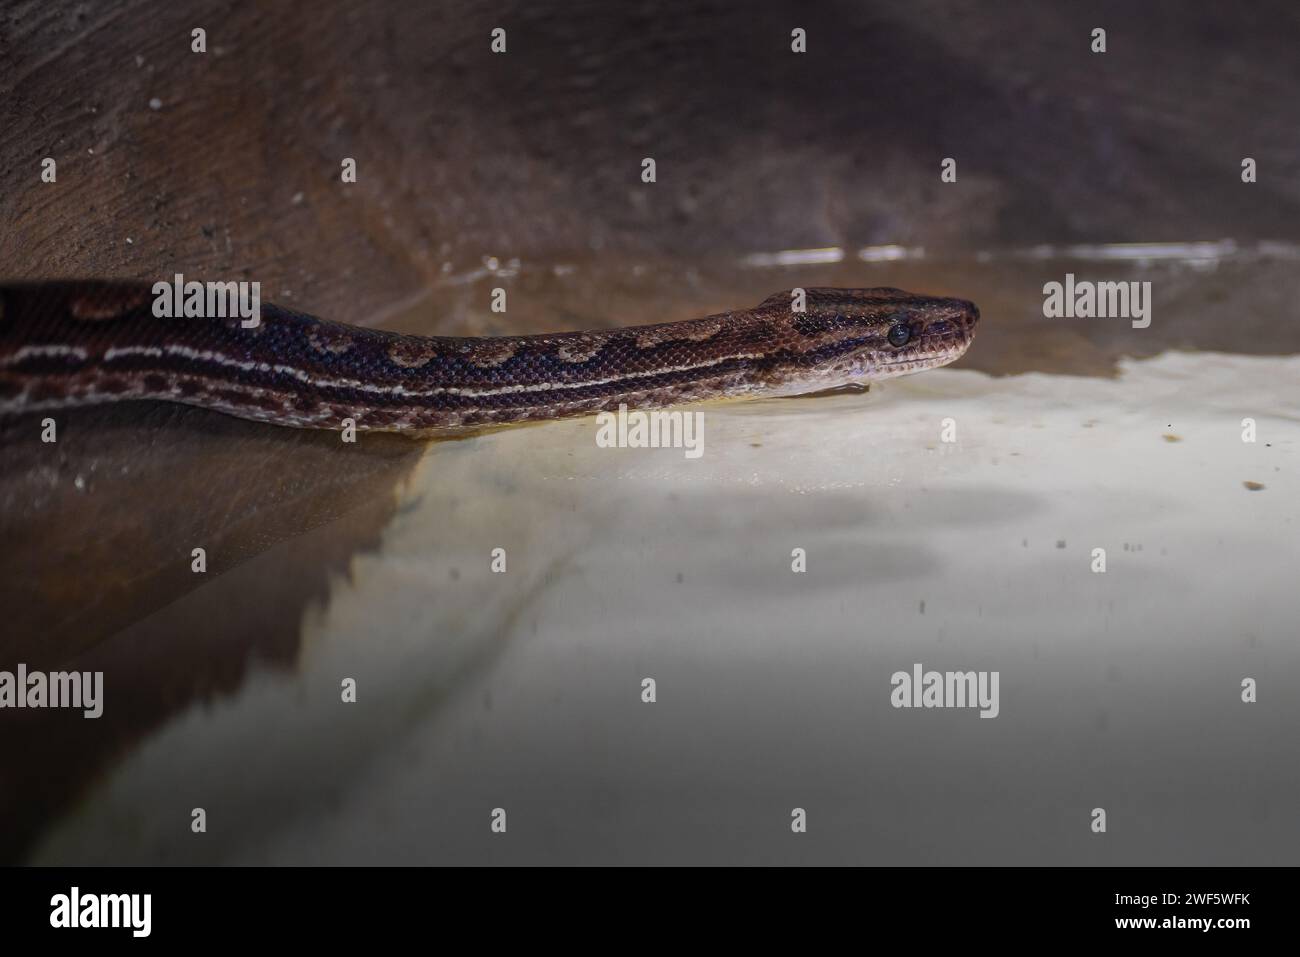 Eastern Rainbow Boa snake (Epicrates crassus) Stock Photo